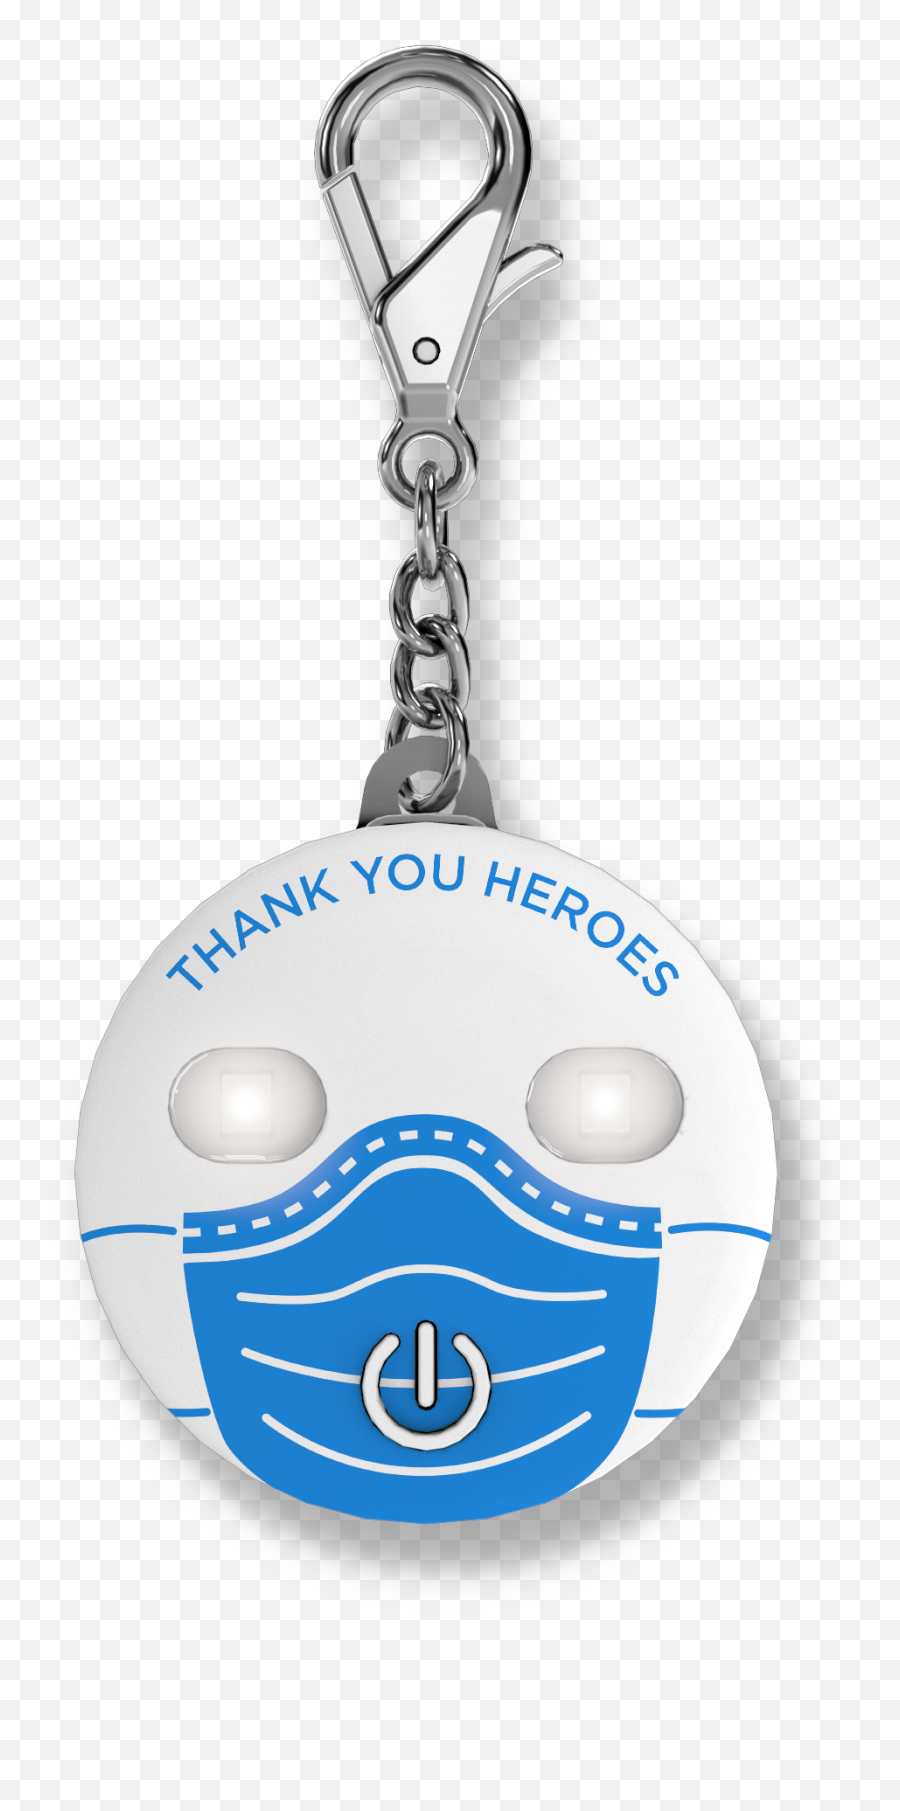 Thank You Heroes - Solid Emoji,Emoticon Keychains